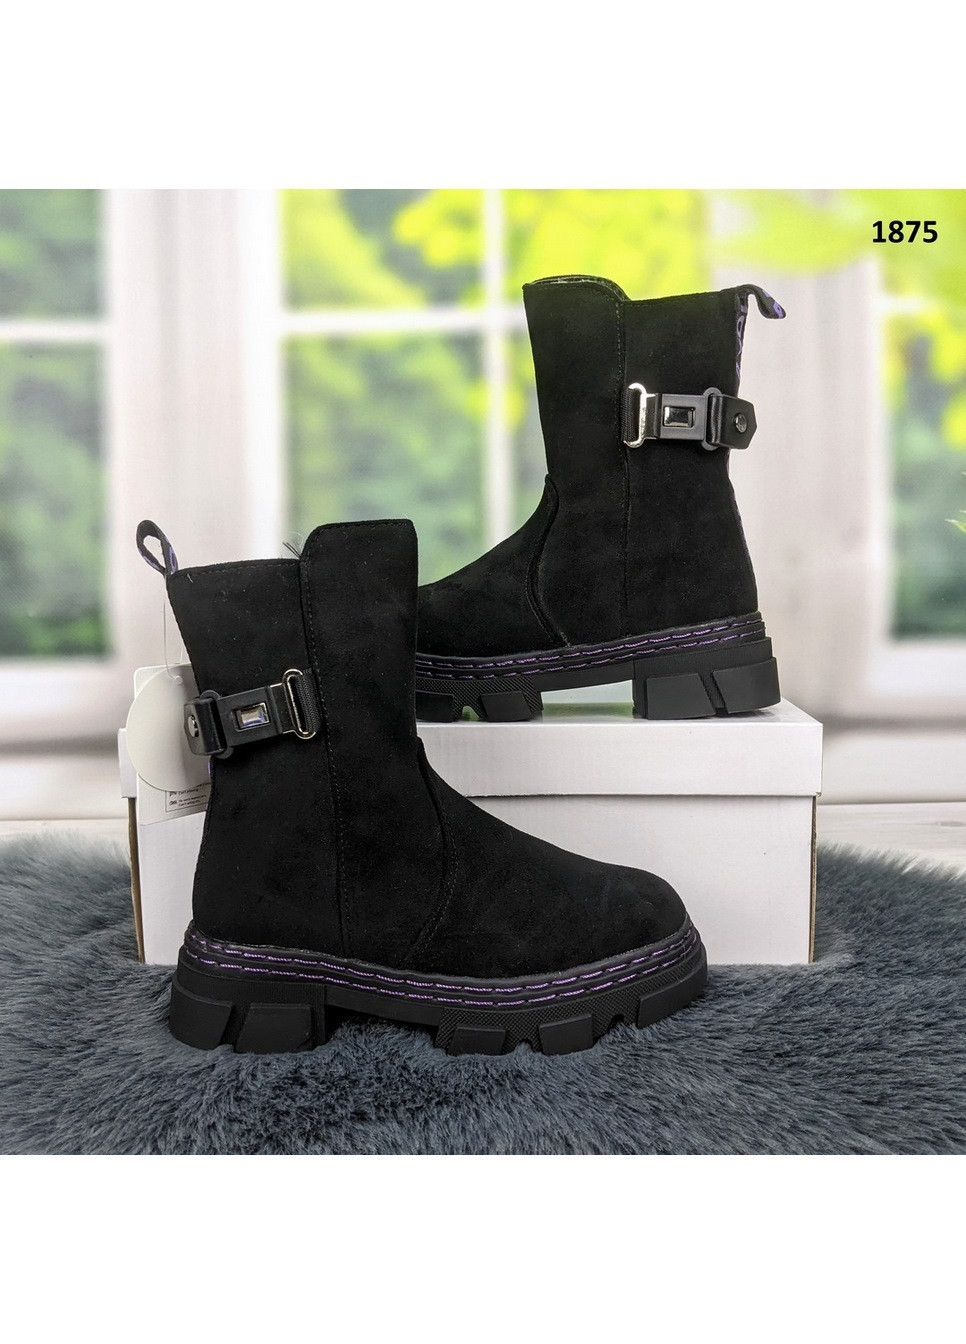 Черные повседневные зимние ботинки зимние детские для девочки Kimboo